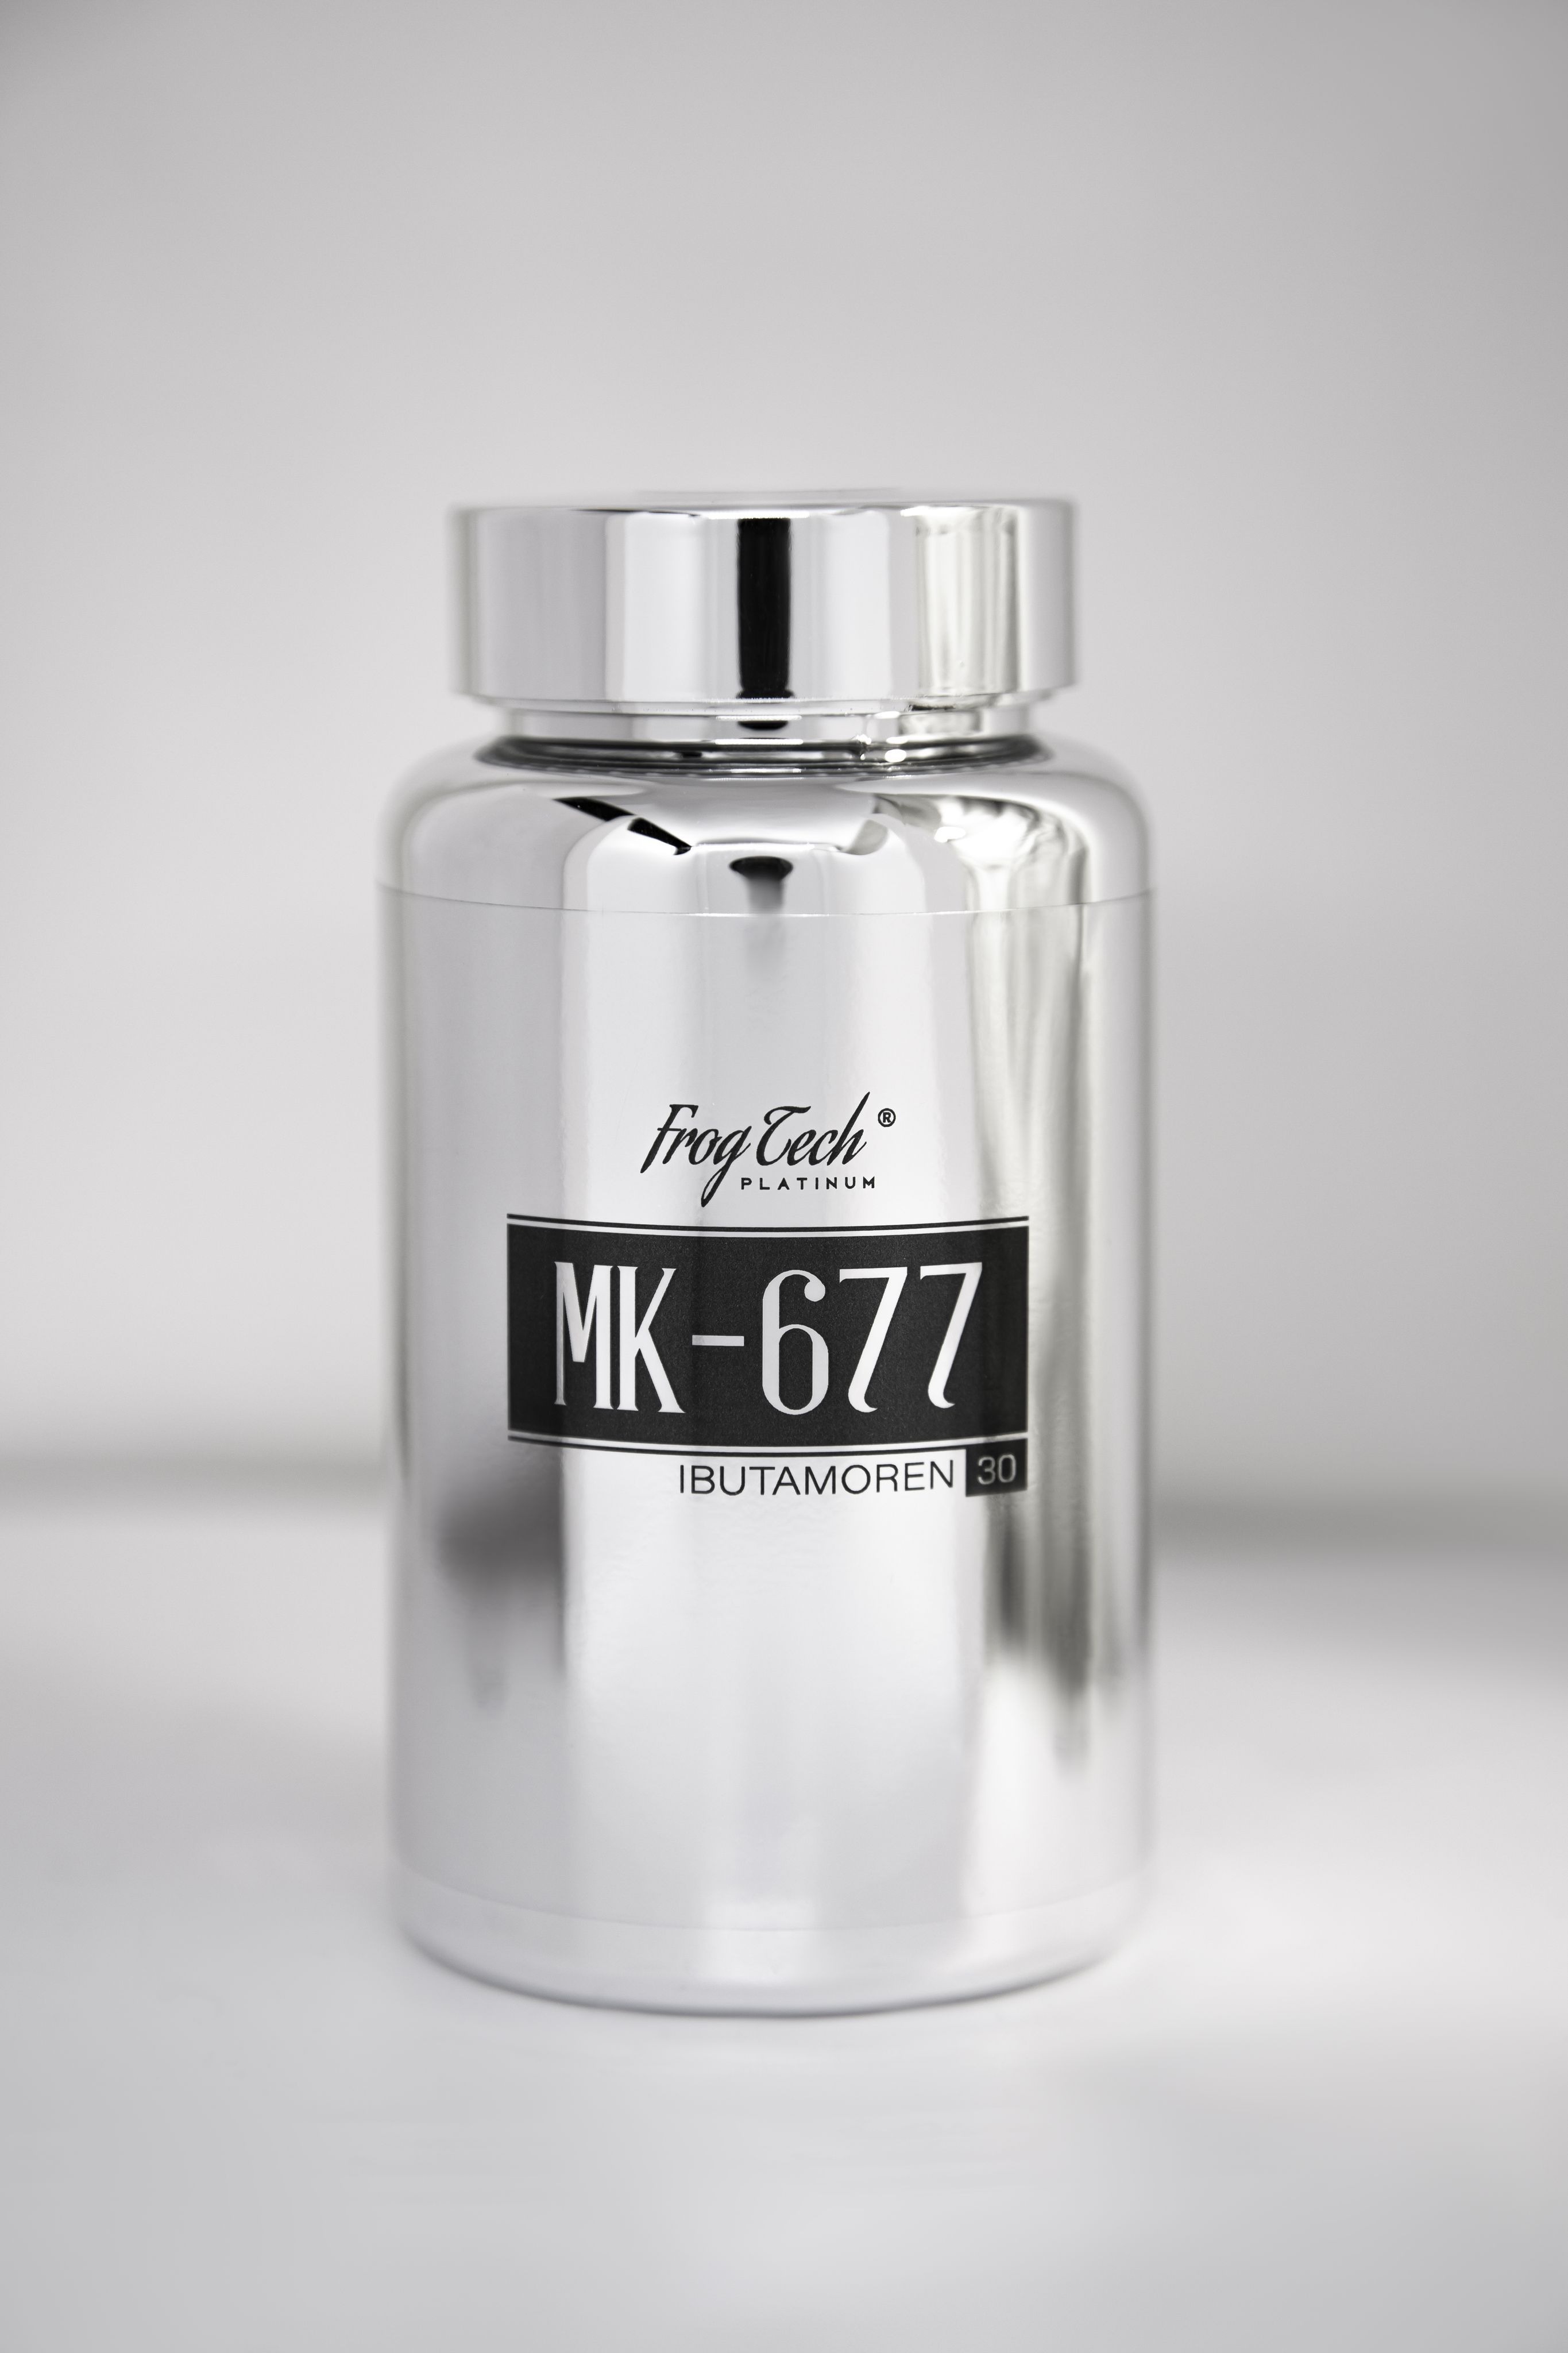 Mk-677